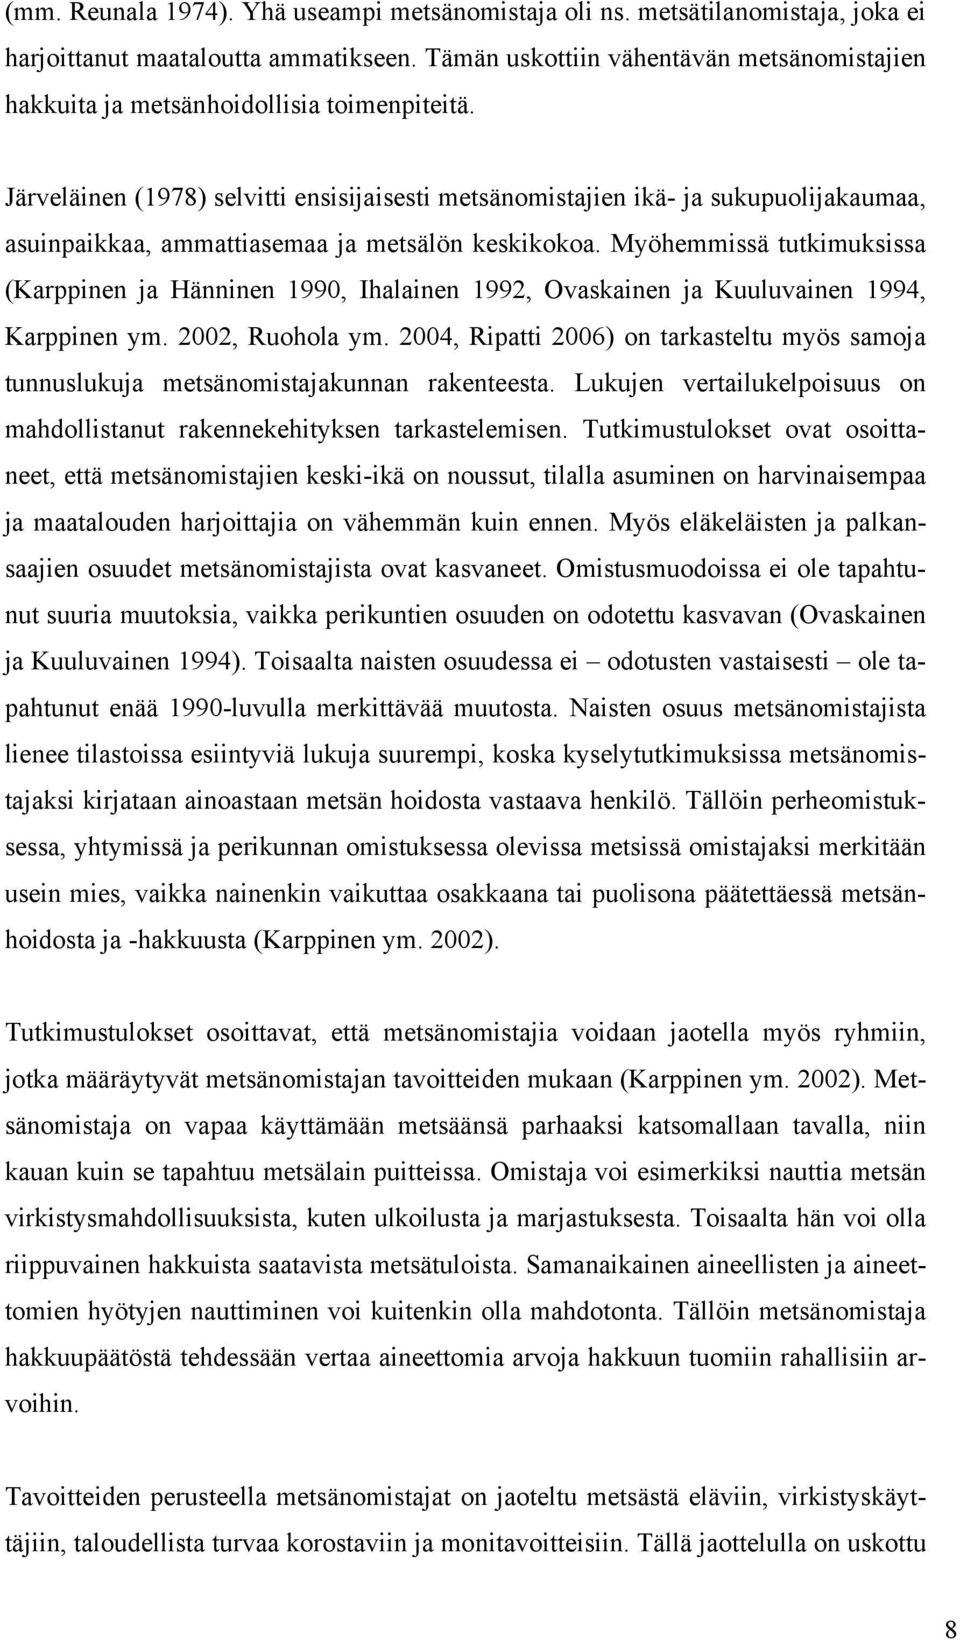 Järveläinen (1978) selvitti ensisijaisesti metsänomistajien ikä- ja sukupuolijakaumaa, asuinpaikkaa, ammattiasemaa ja metsälön keskikokoa.